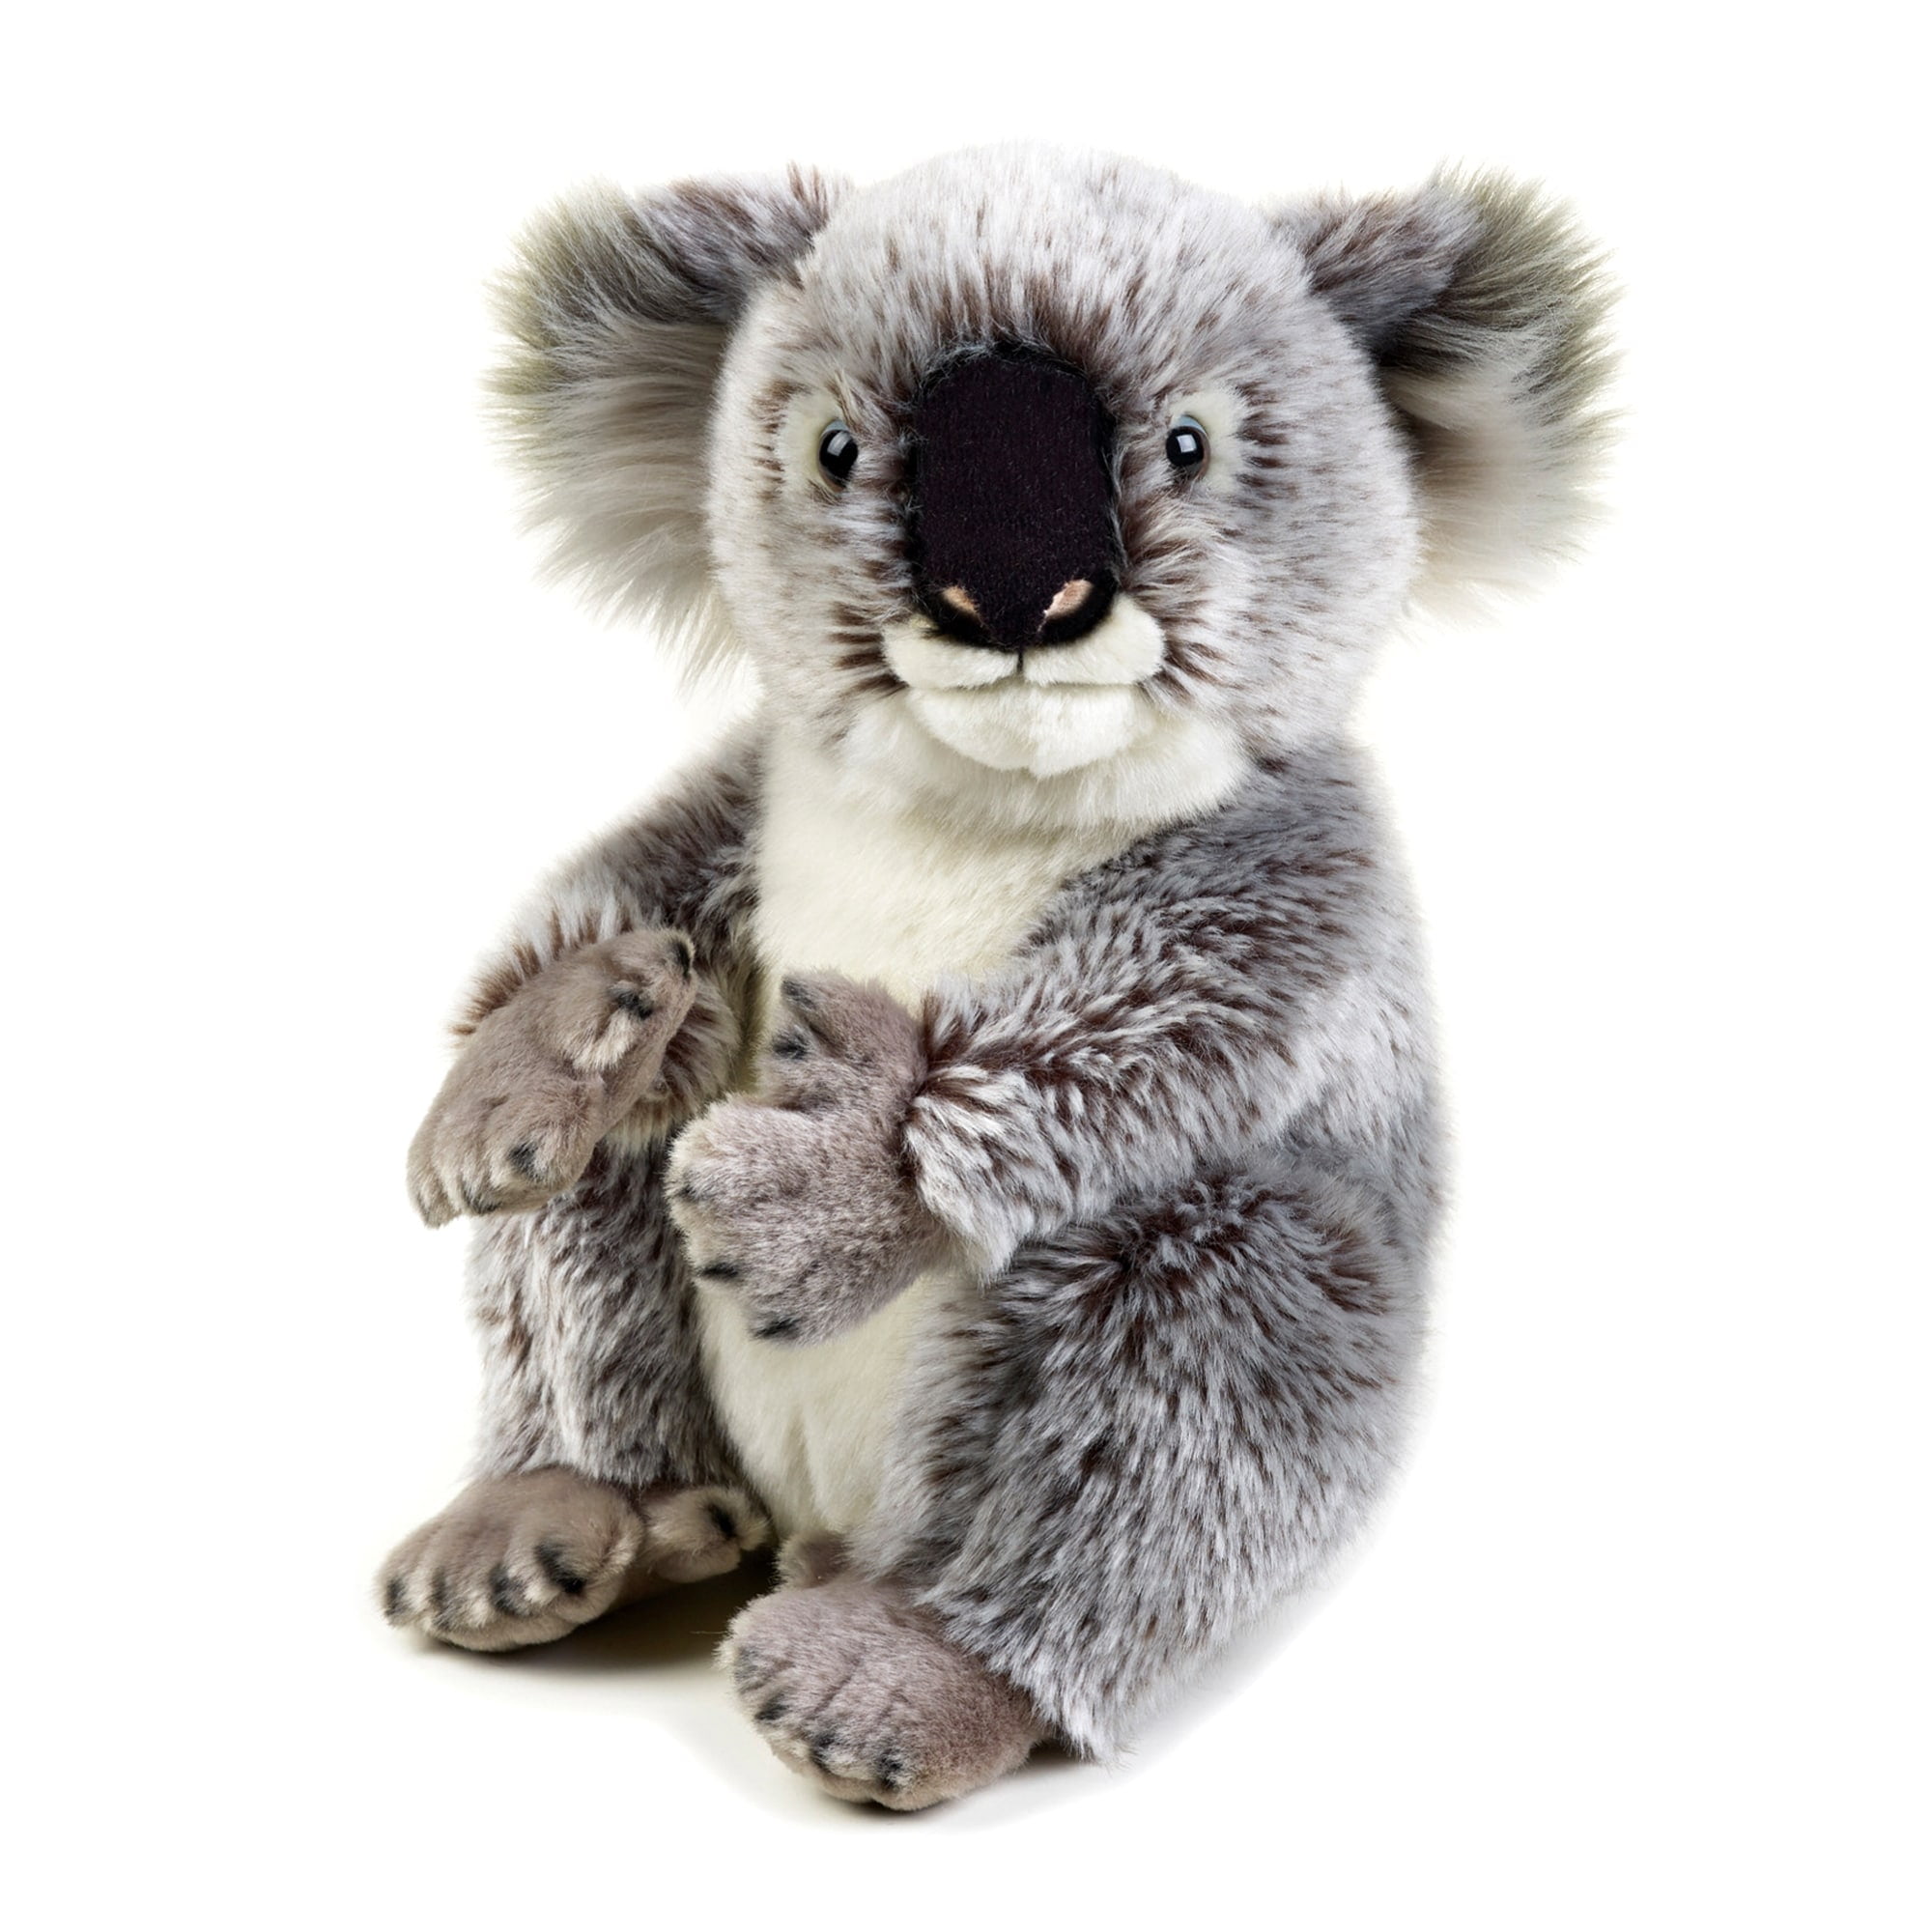 giant koala stuffed animal walmart